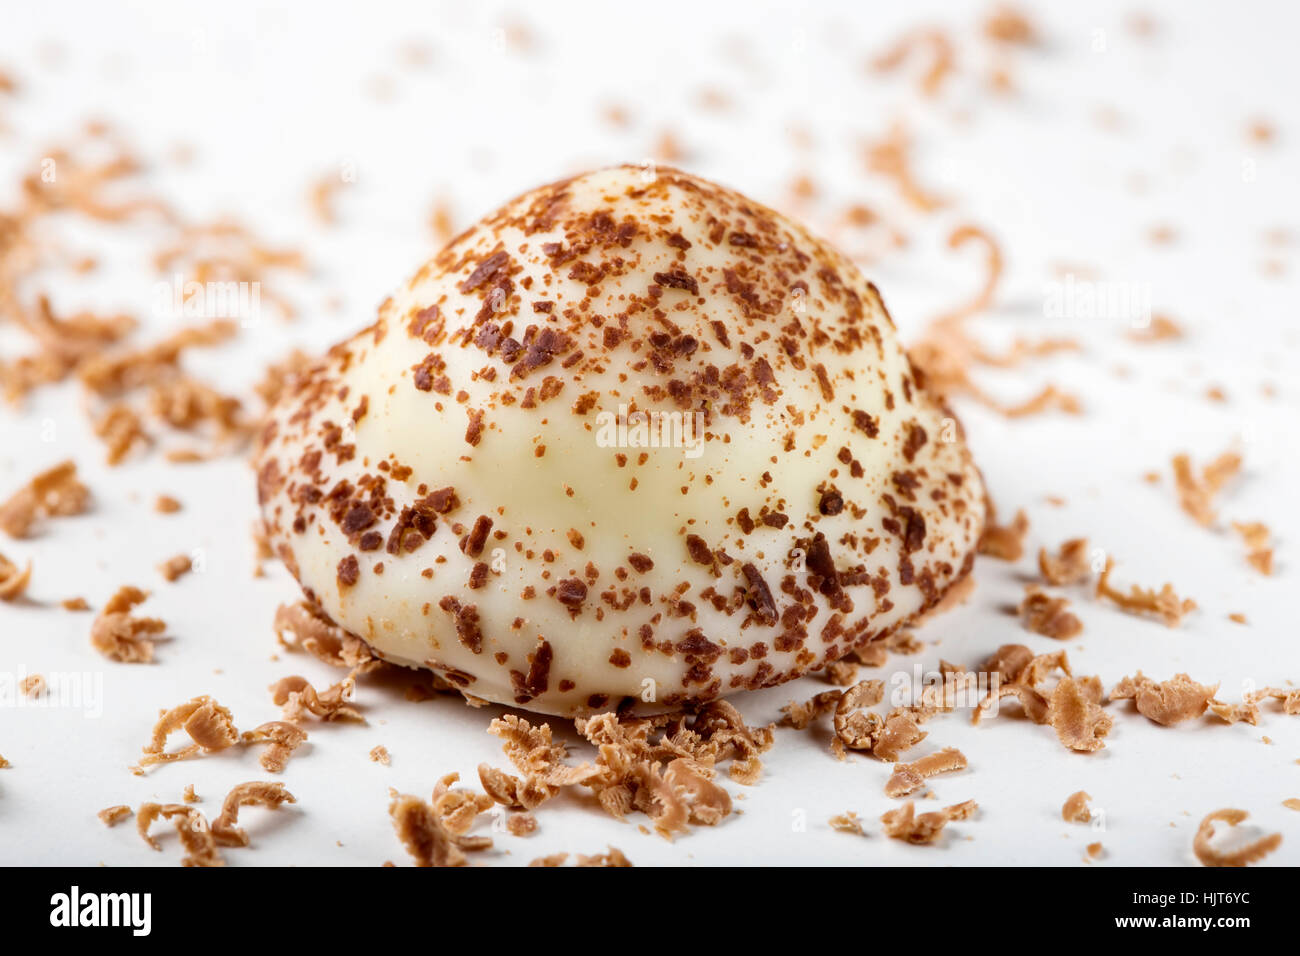 Una perla di vaniglia caramelle e cioccolato fondente grattugiato su sfondo bianco Foto Stock